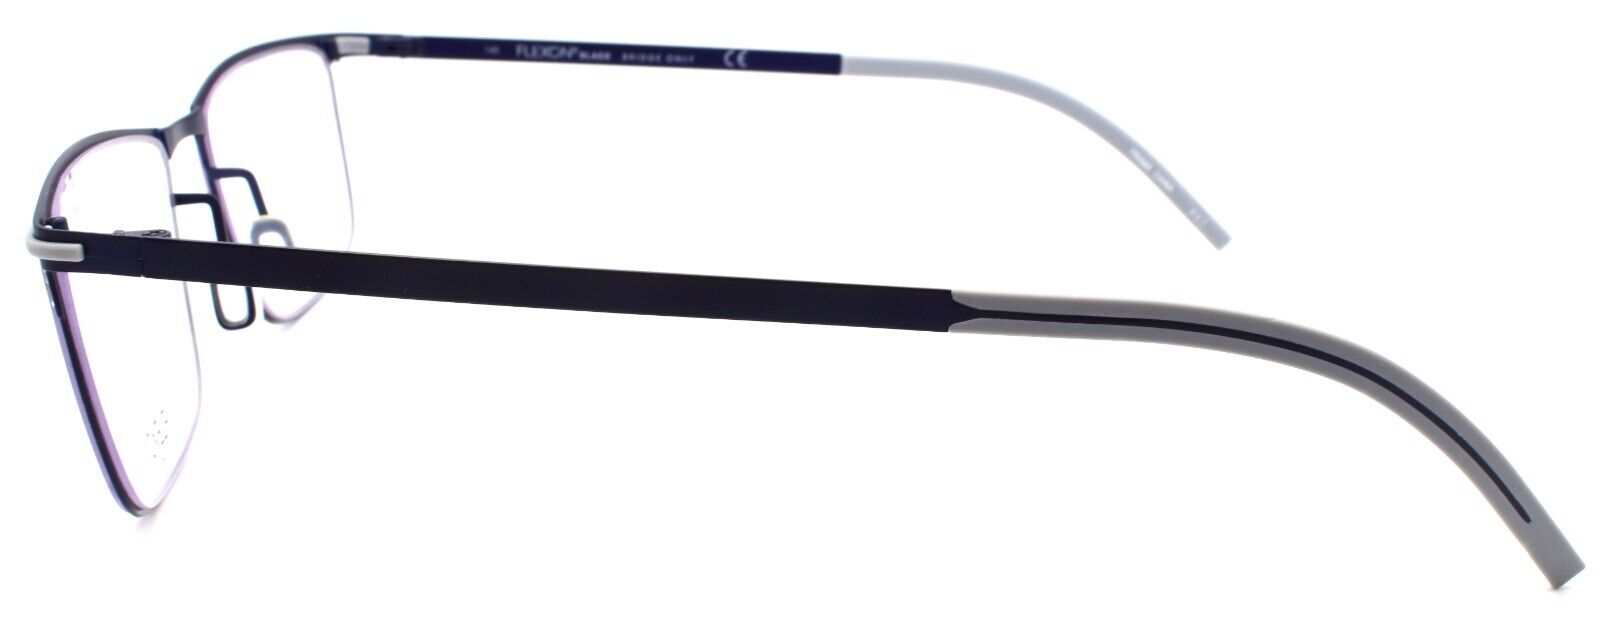 3-Flexon B2005 412 Men's Eyeglasses Frames Navy 55-19-145 Flexible Titanium-883900204545-IKSpecs